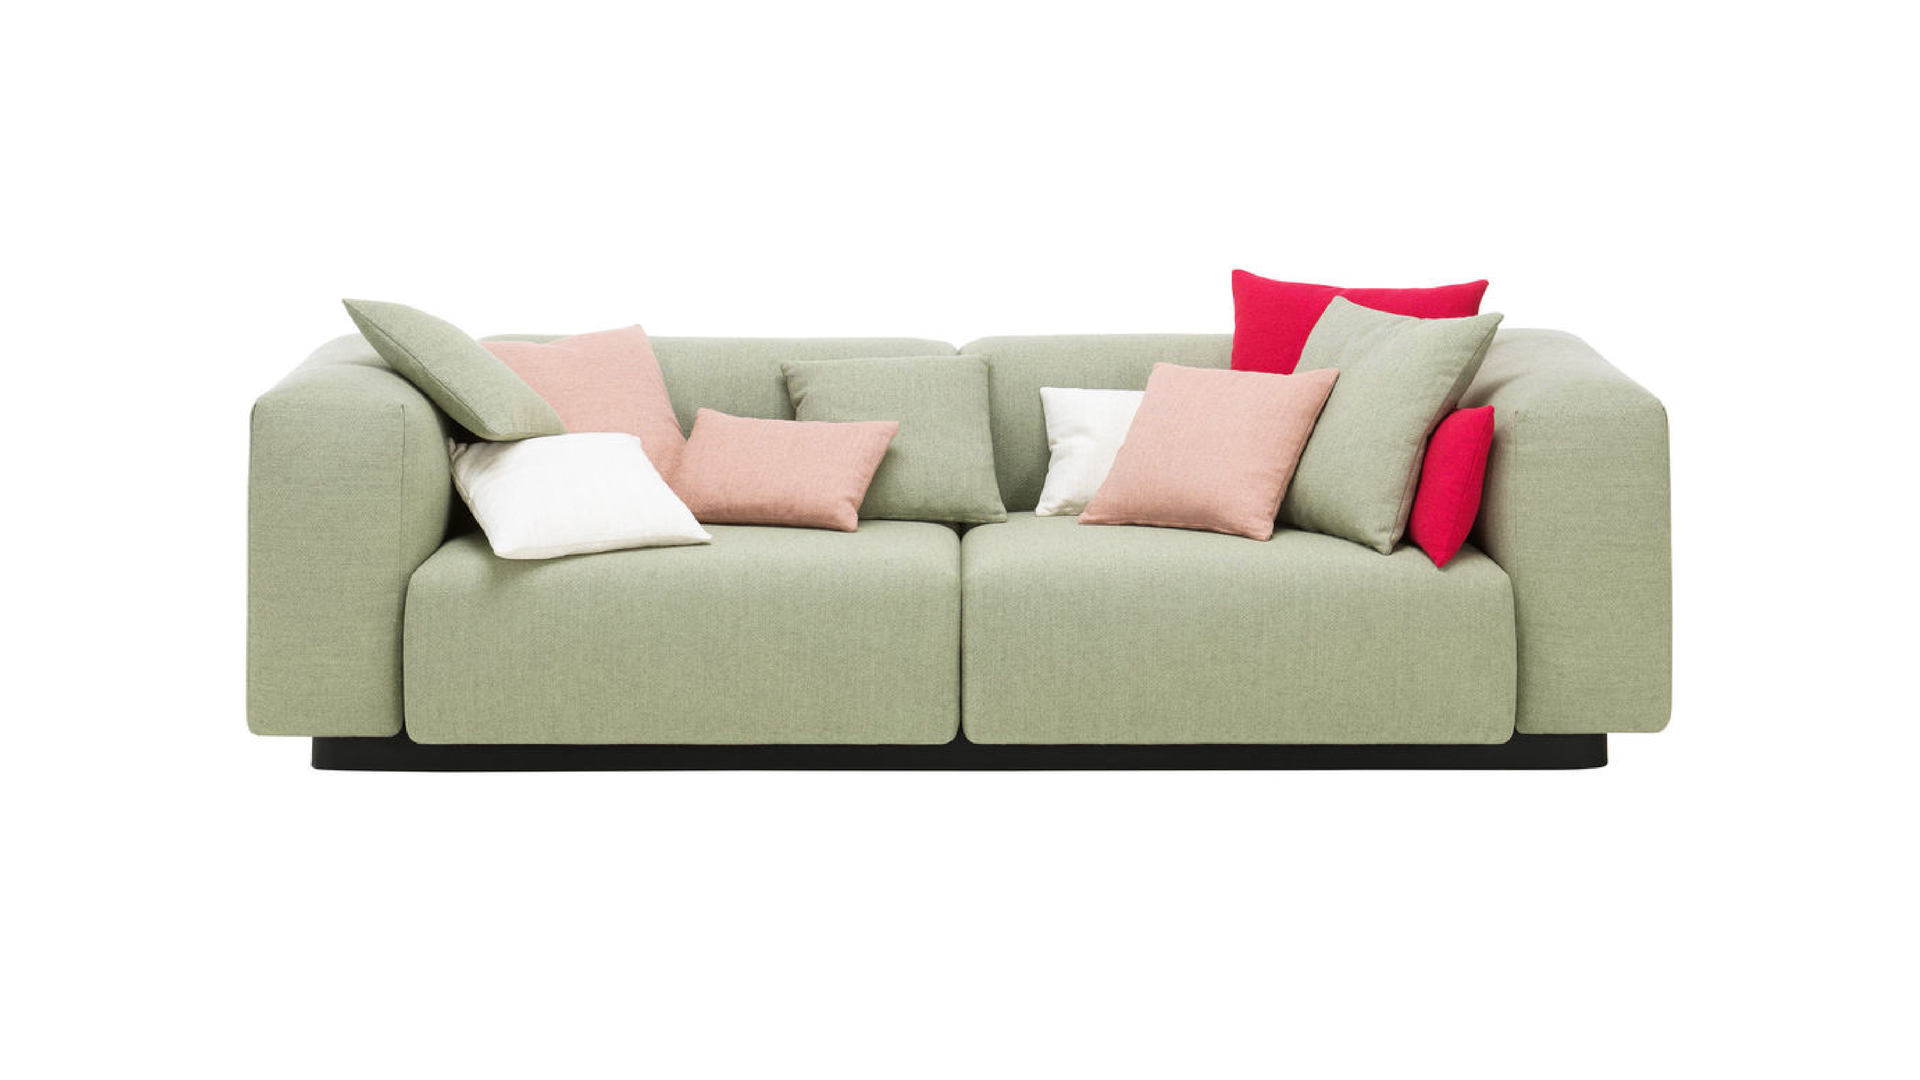 Large soft modular sofa 6.png